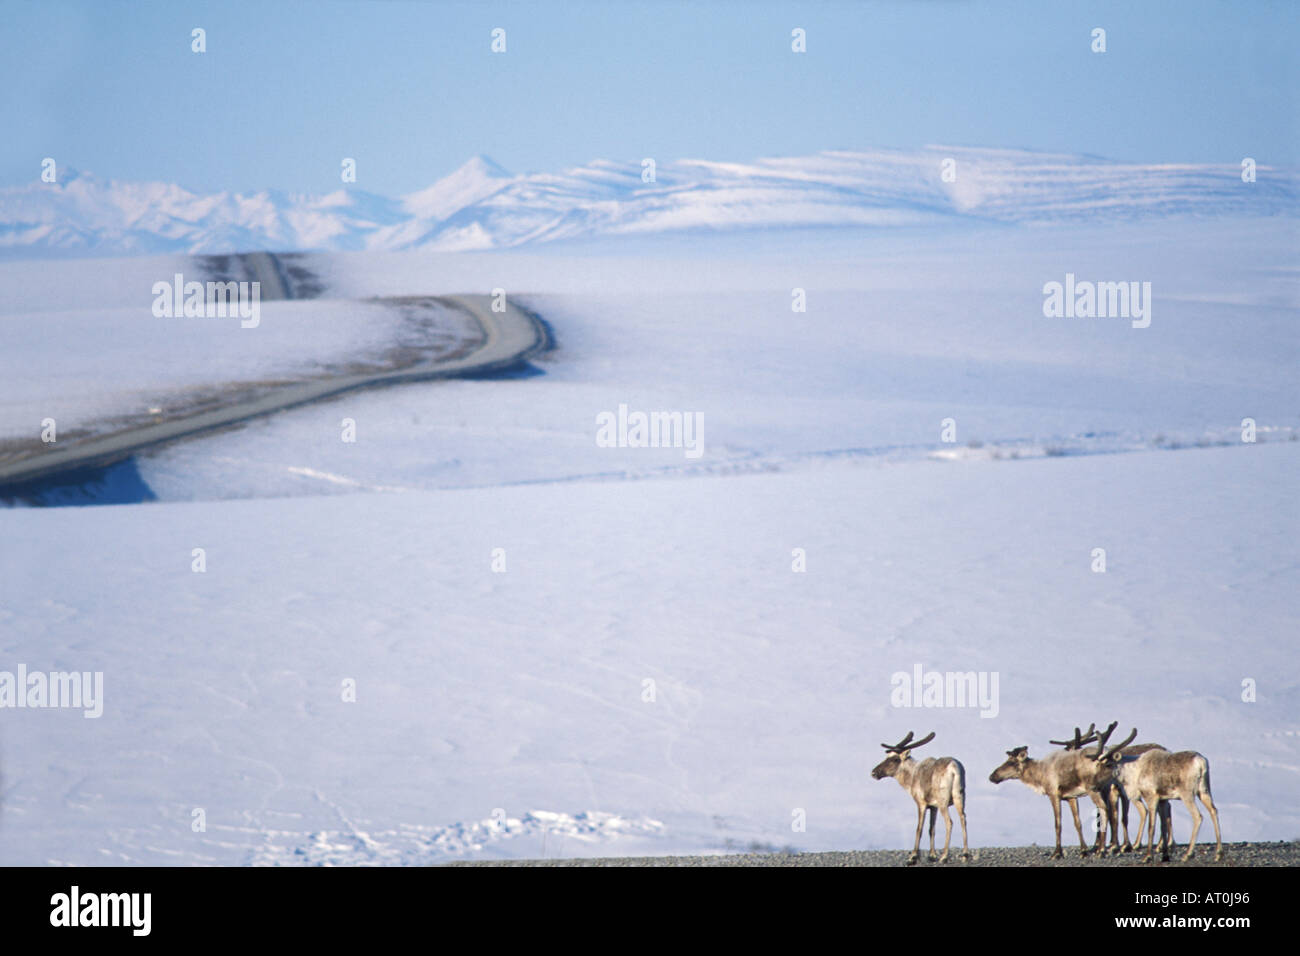 Le caribou de la toundra Rangifer tarandus le long de la route dans l'Arctique de l'Alaska North Slope Banque D'Images